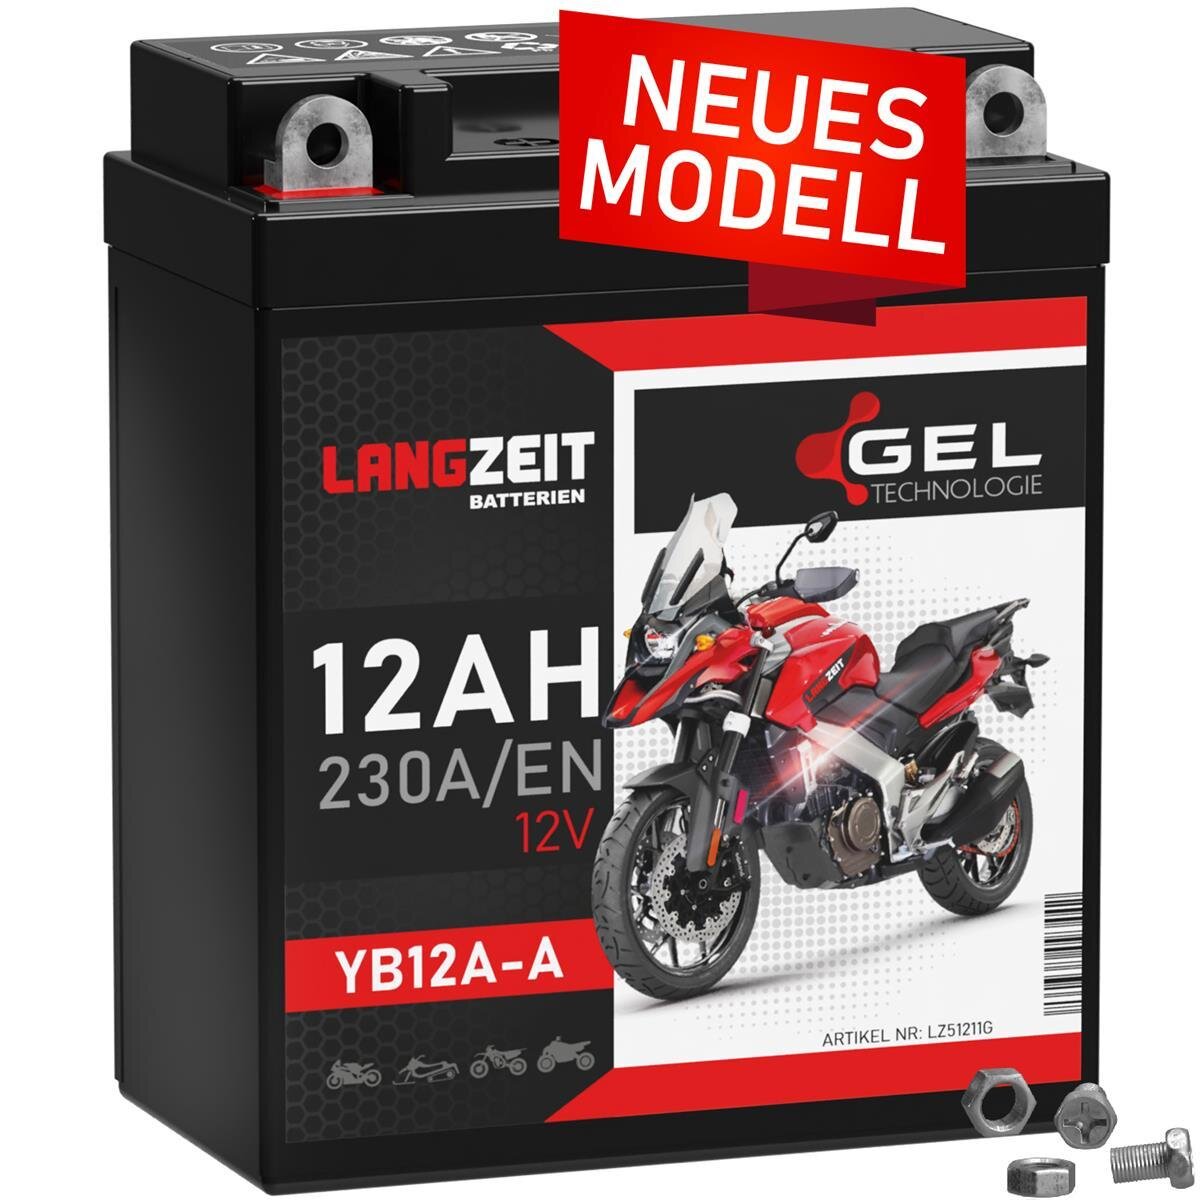 Langzeit Gel Motorradbatterie YB12A-A 12Ah 12V, 42,90 €